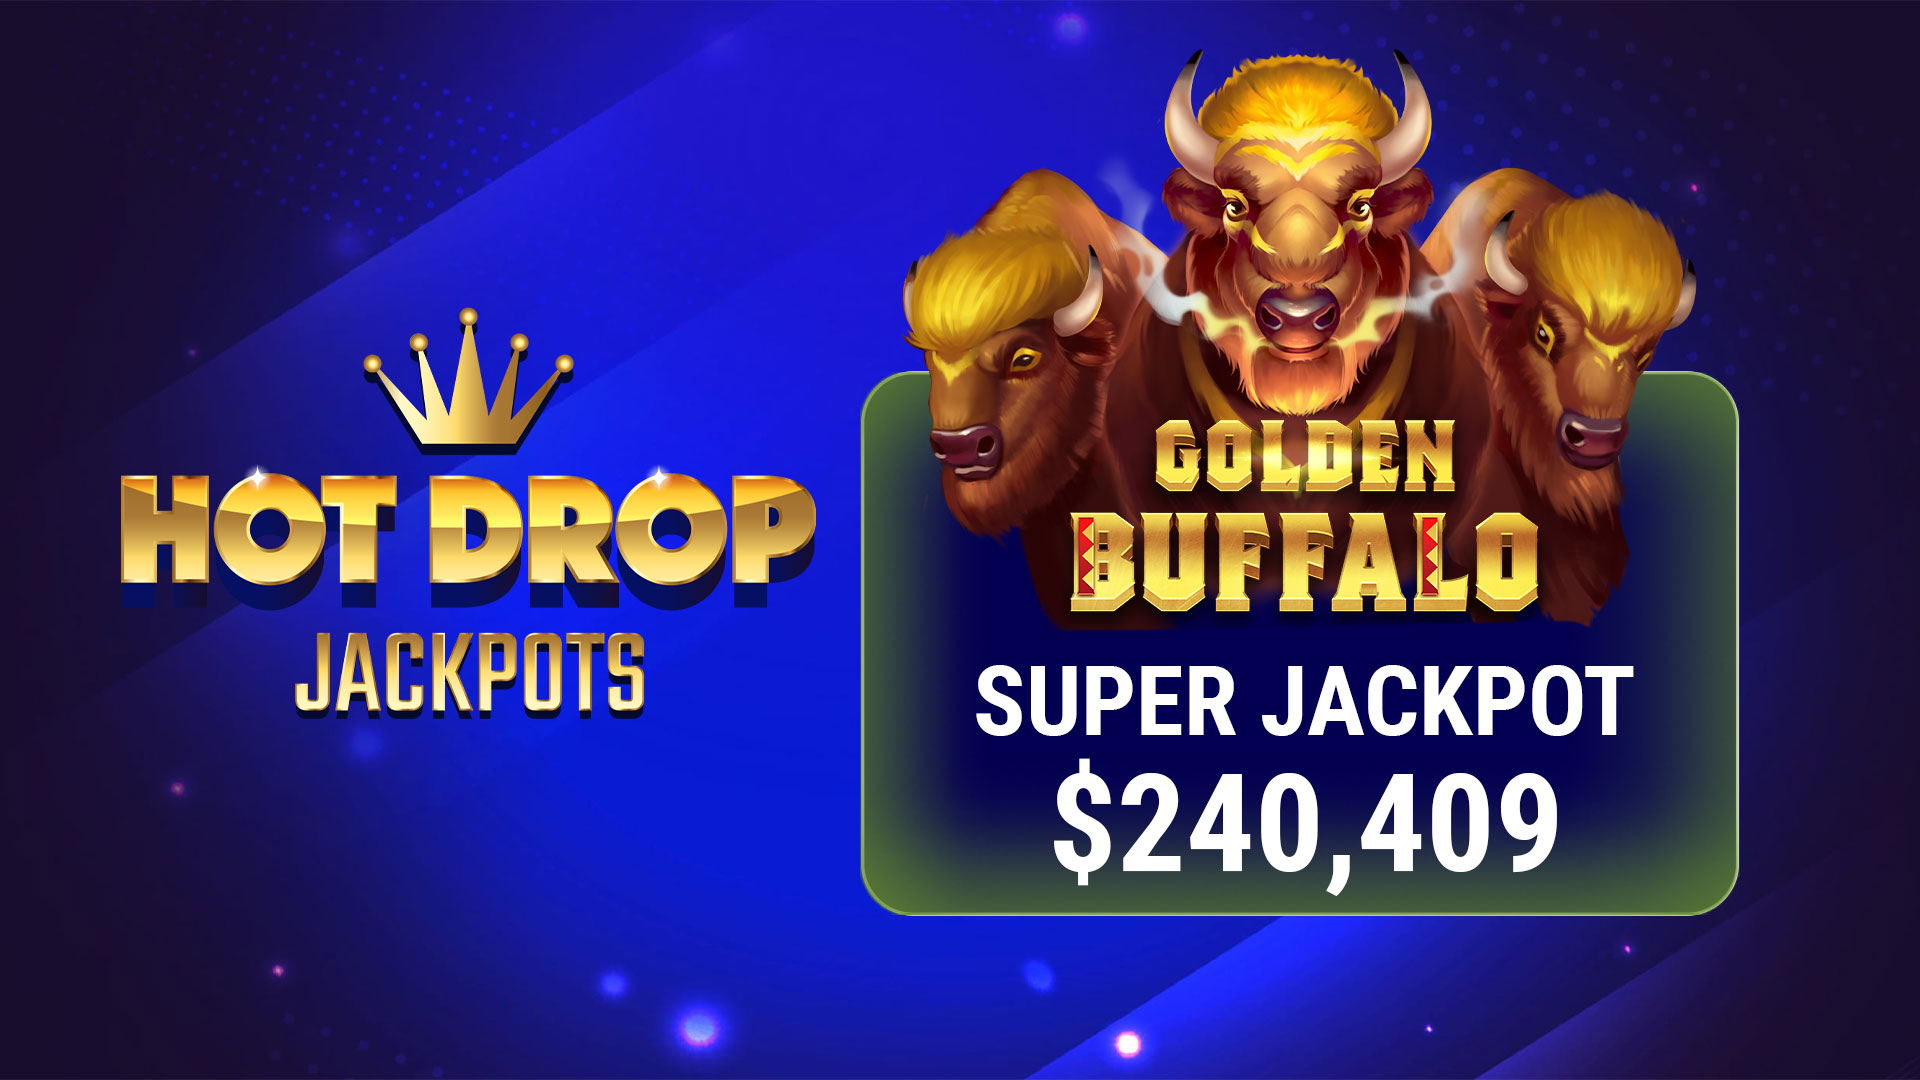 Hot Drop Jackpots Super Jackpot